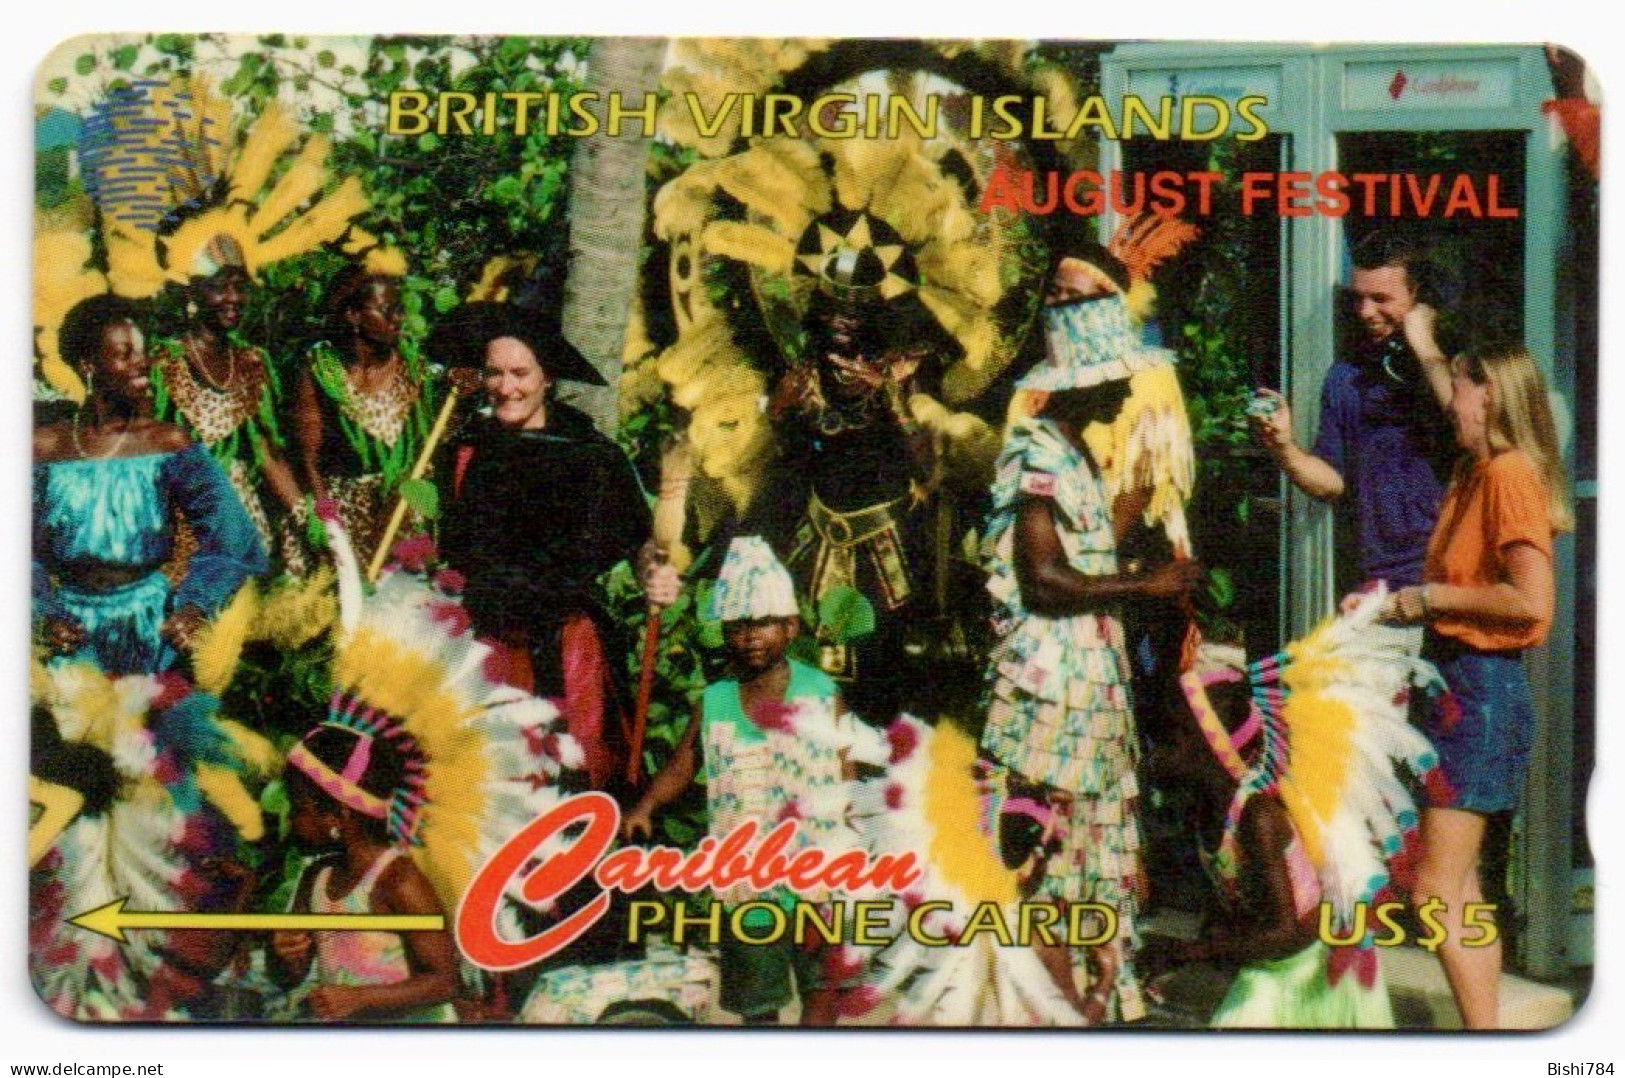 British Virgin Islands - August Festival - 171CBVD - Jungferninseln (Virgin I.)